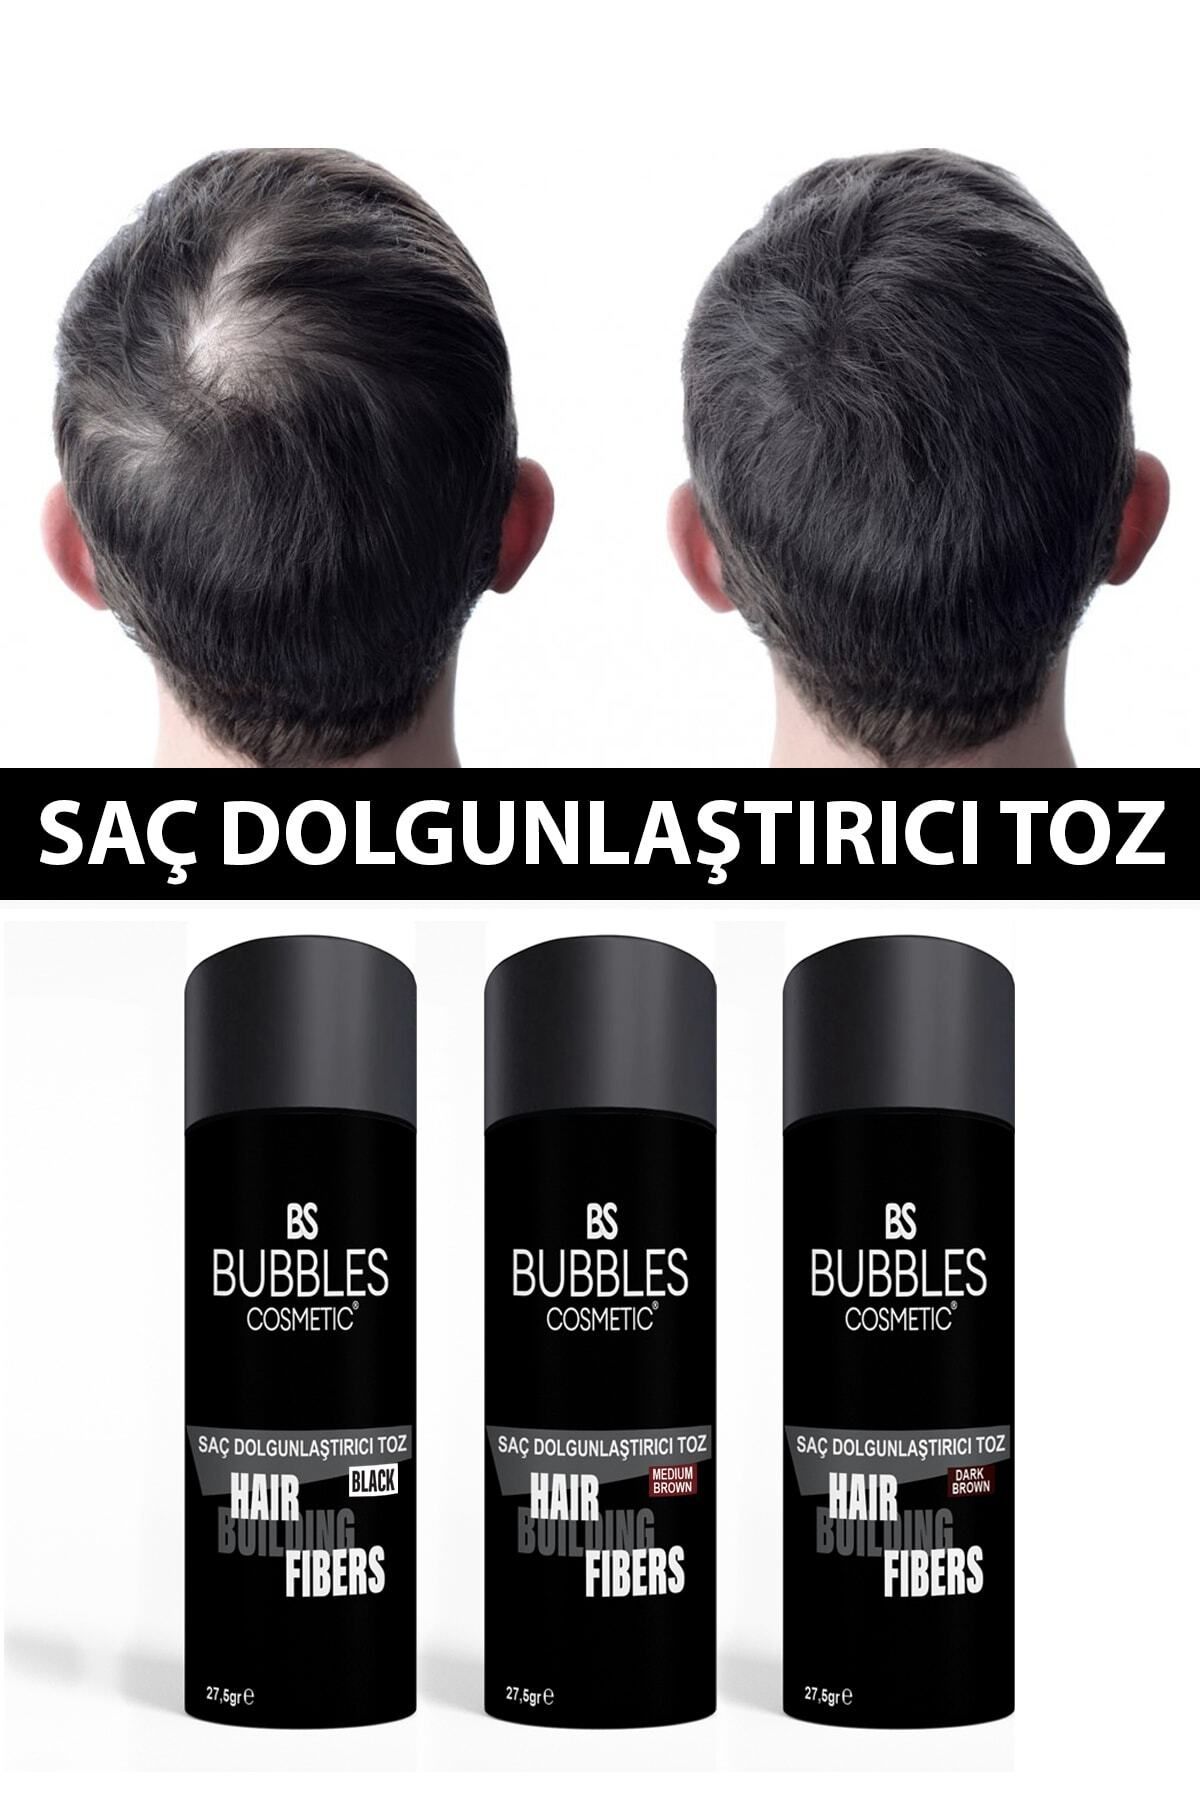 bs bubbles cosmetic Saç Dolgunlaştırıcı Kellik Kapatıcı Fiber Toz Topik Siyah 27,5 Gr